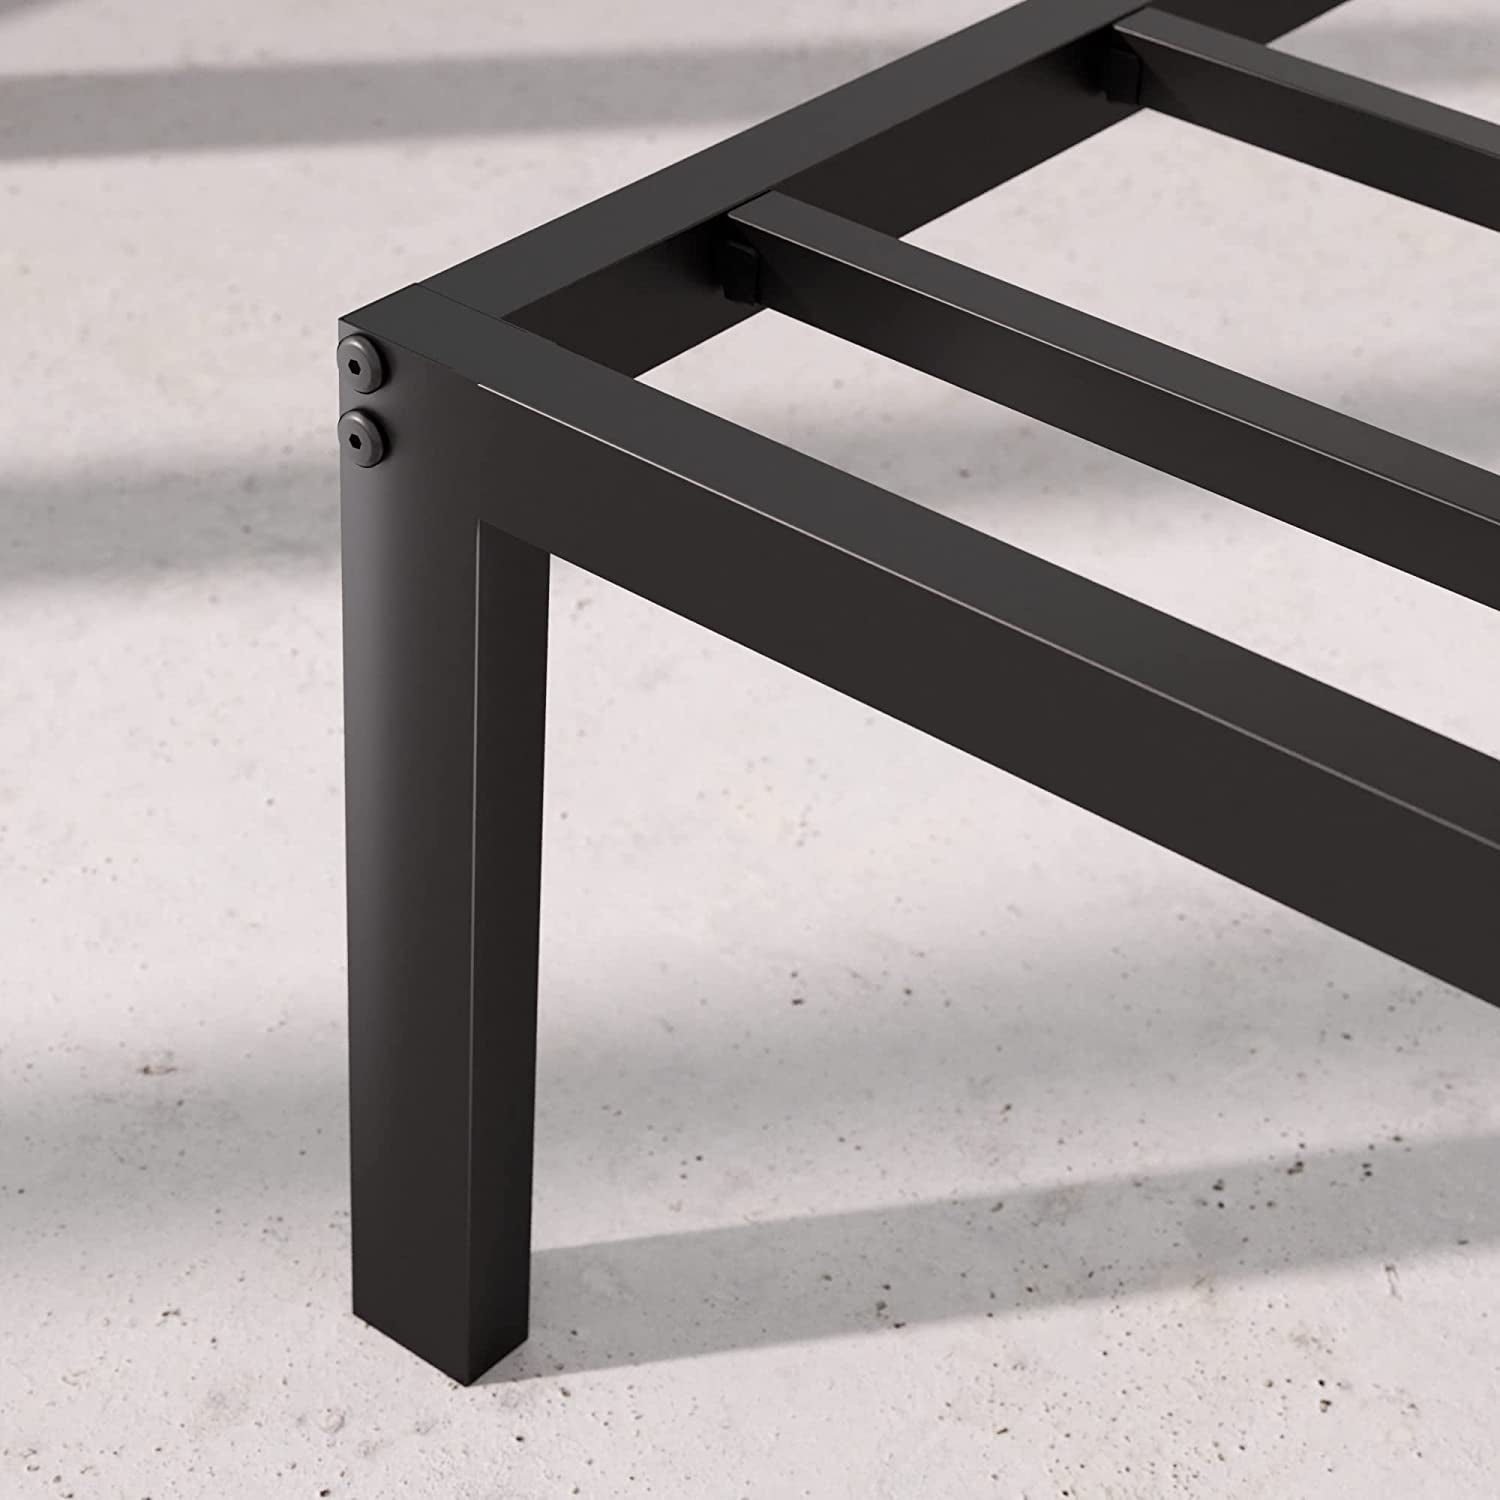 Yelena 36 Cm Metal Platform Bed Frame | Steel Slat Support | Easy Assembly | under Bed Storage | King | Black